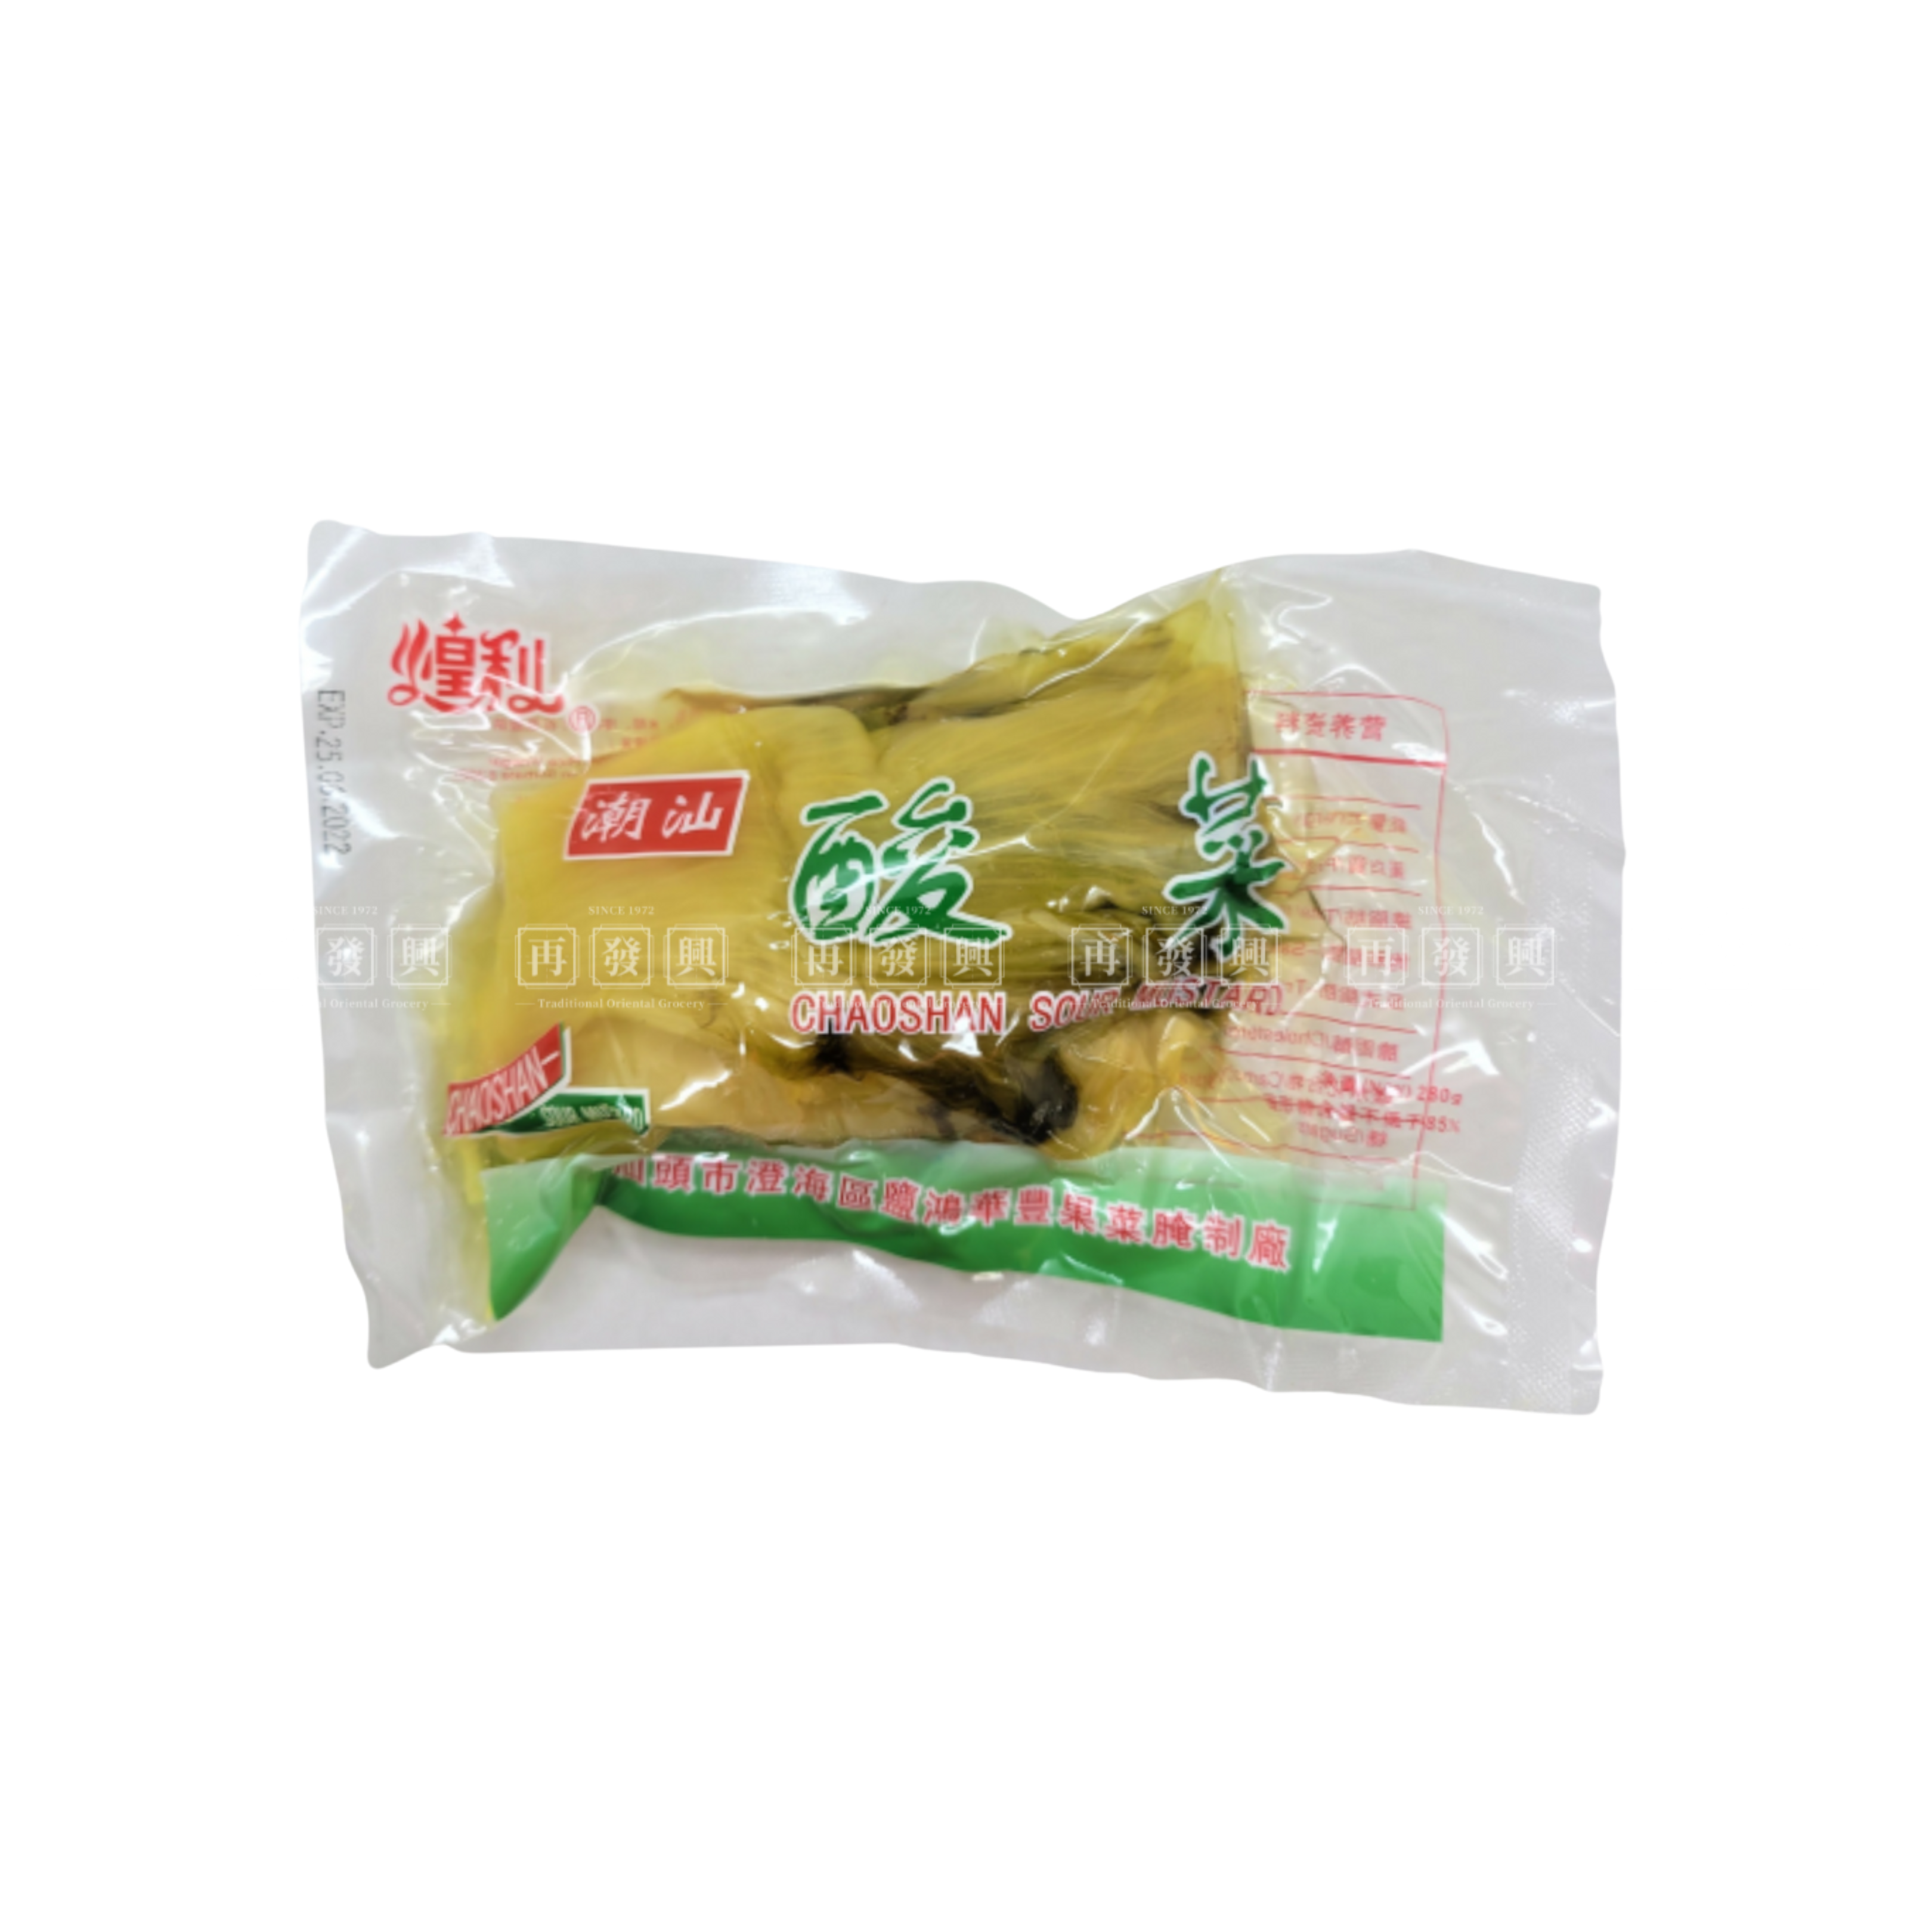 Huang Li Preserved Sour Vegetable 250g